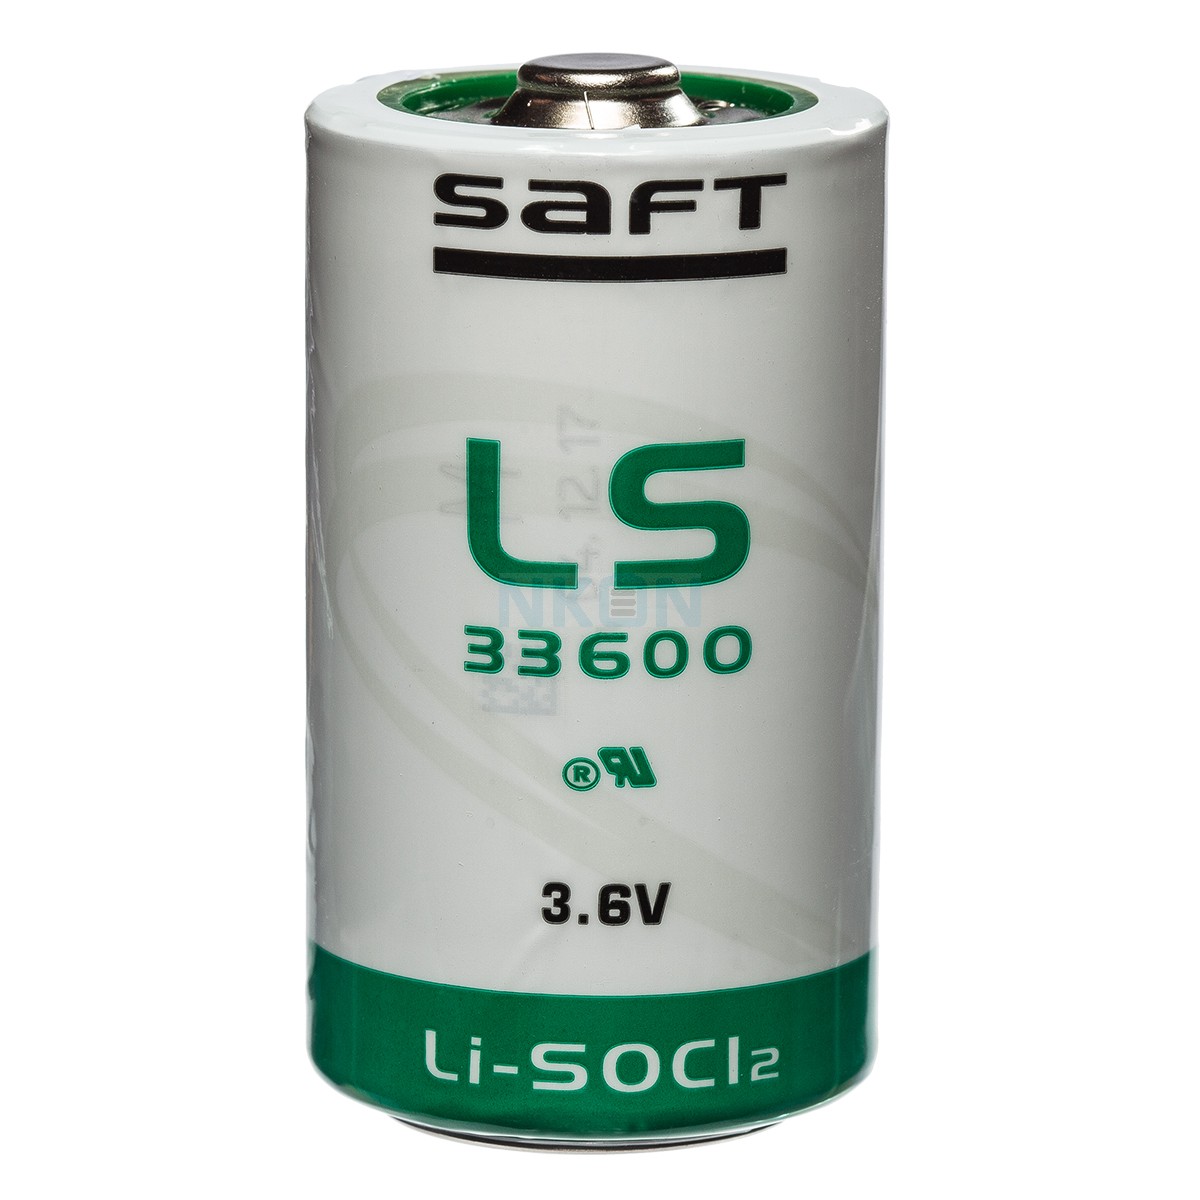 X1 saft-ls-33600-01